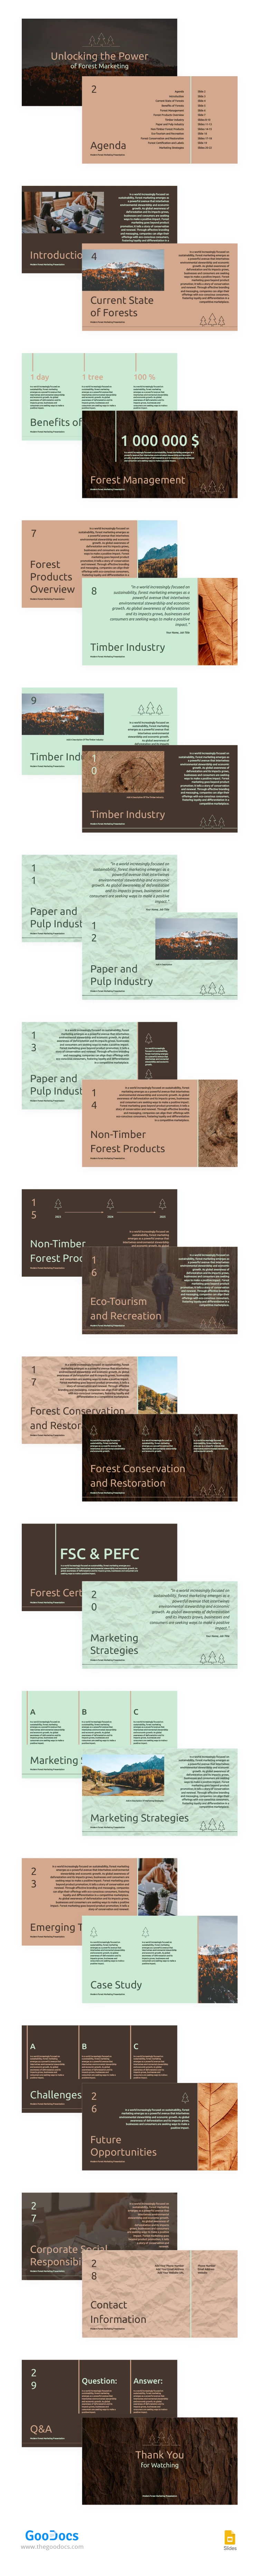 Marketing Moderno della Foresta - free Google Docs Template - 10067032